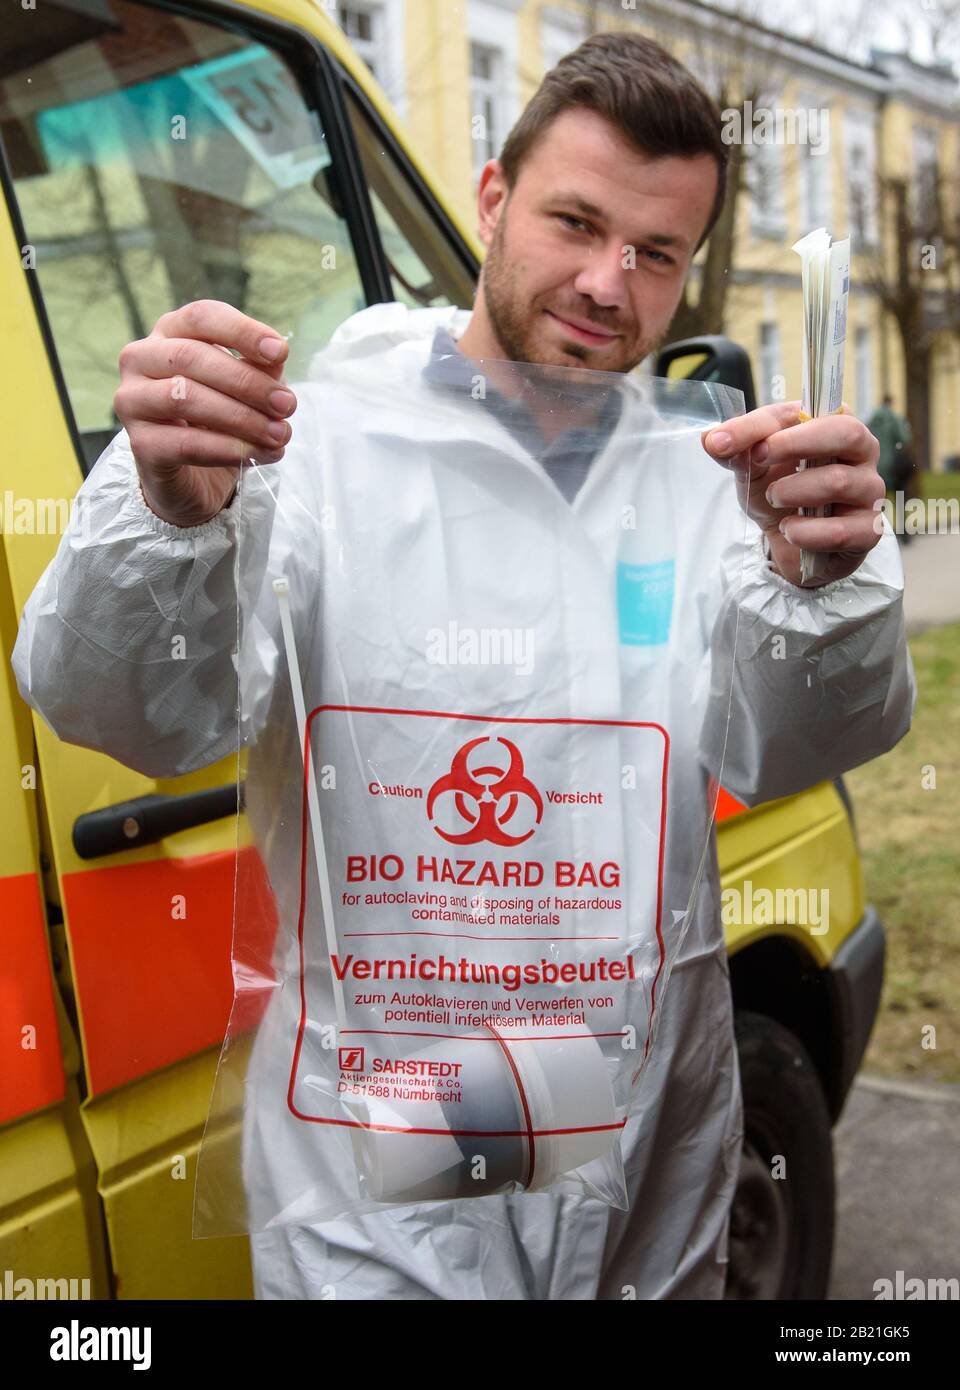 RIGA, LETTLAND. Februar 2020. Medizinisches Personal des lettischen staatlichen medizinischen Notfalldienstes zeigt Bio Hazard Bag für Corona-Virustests. Stockfoto